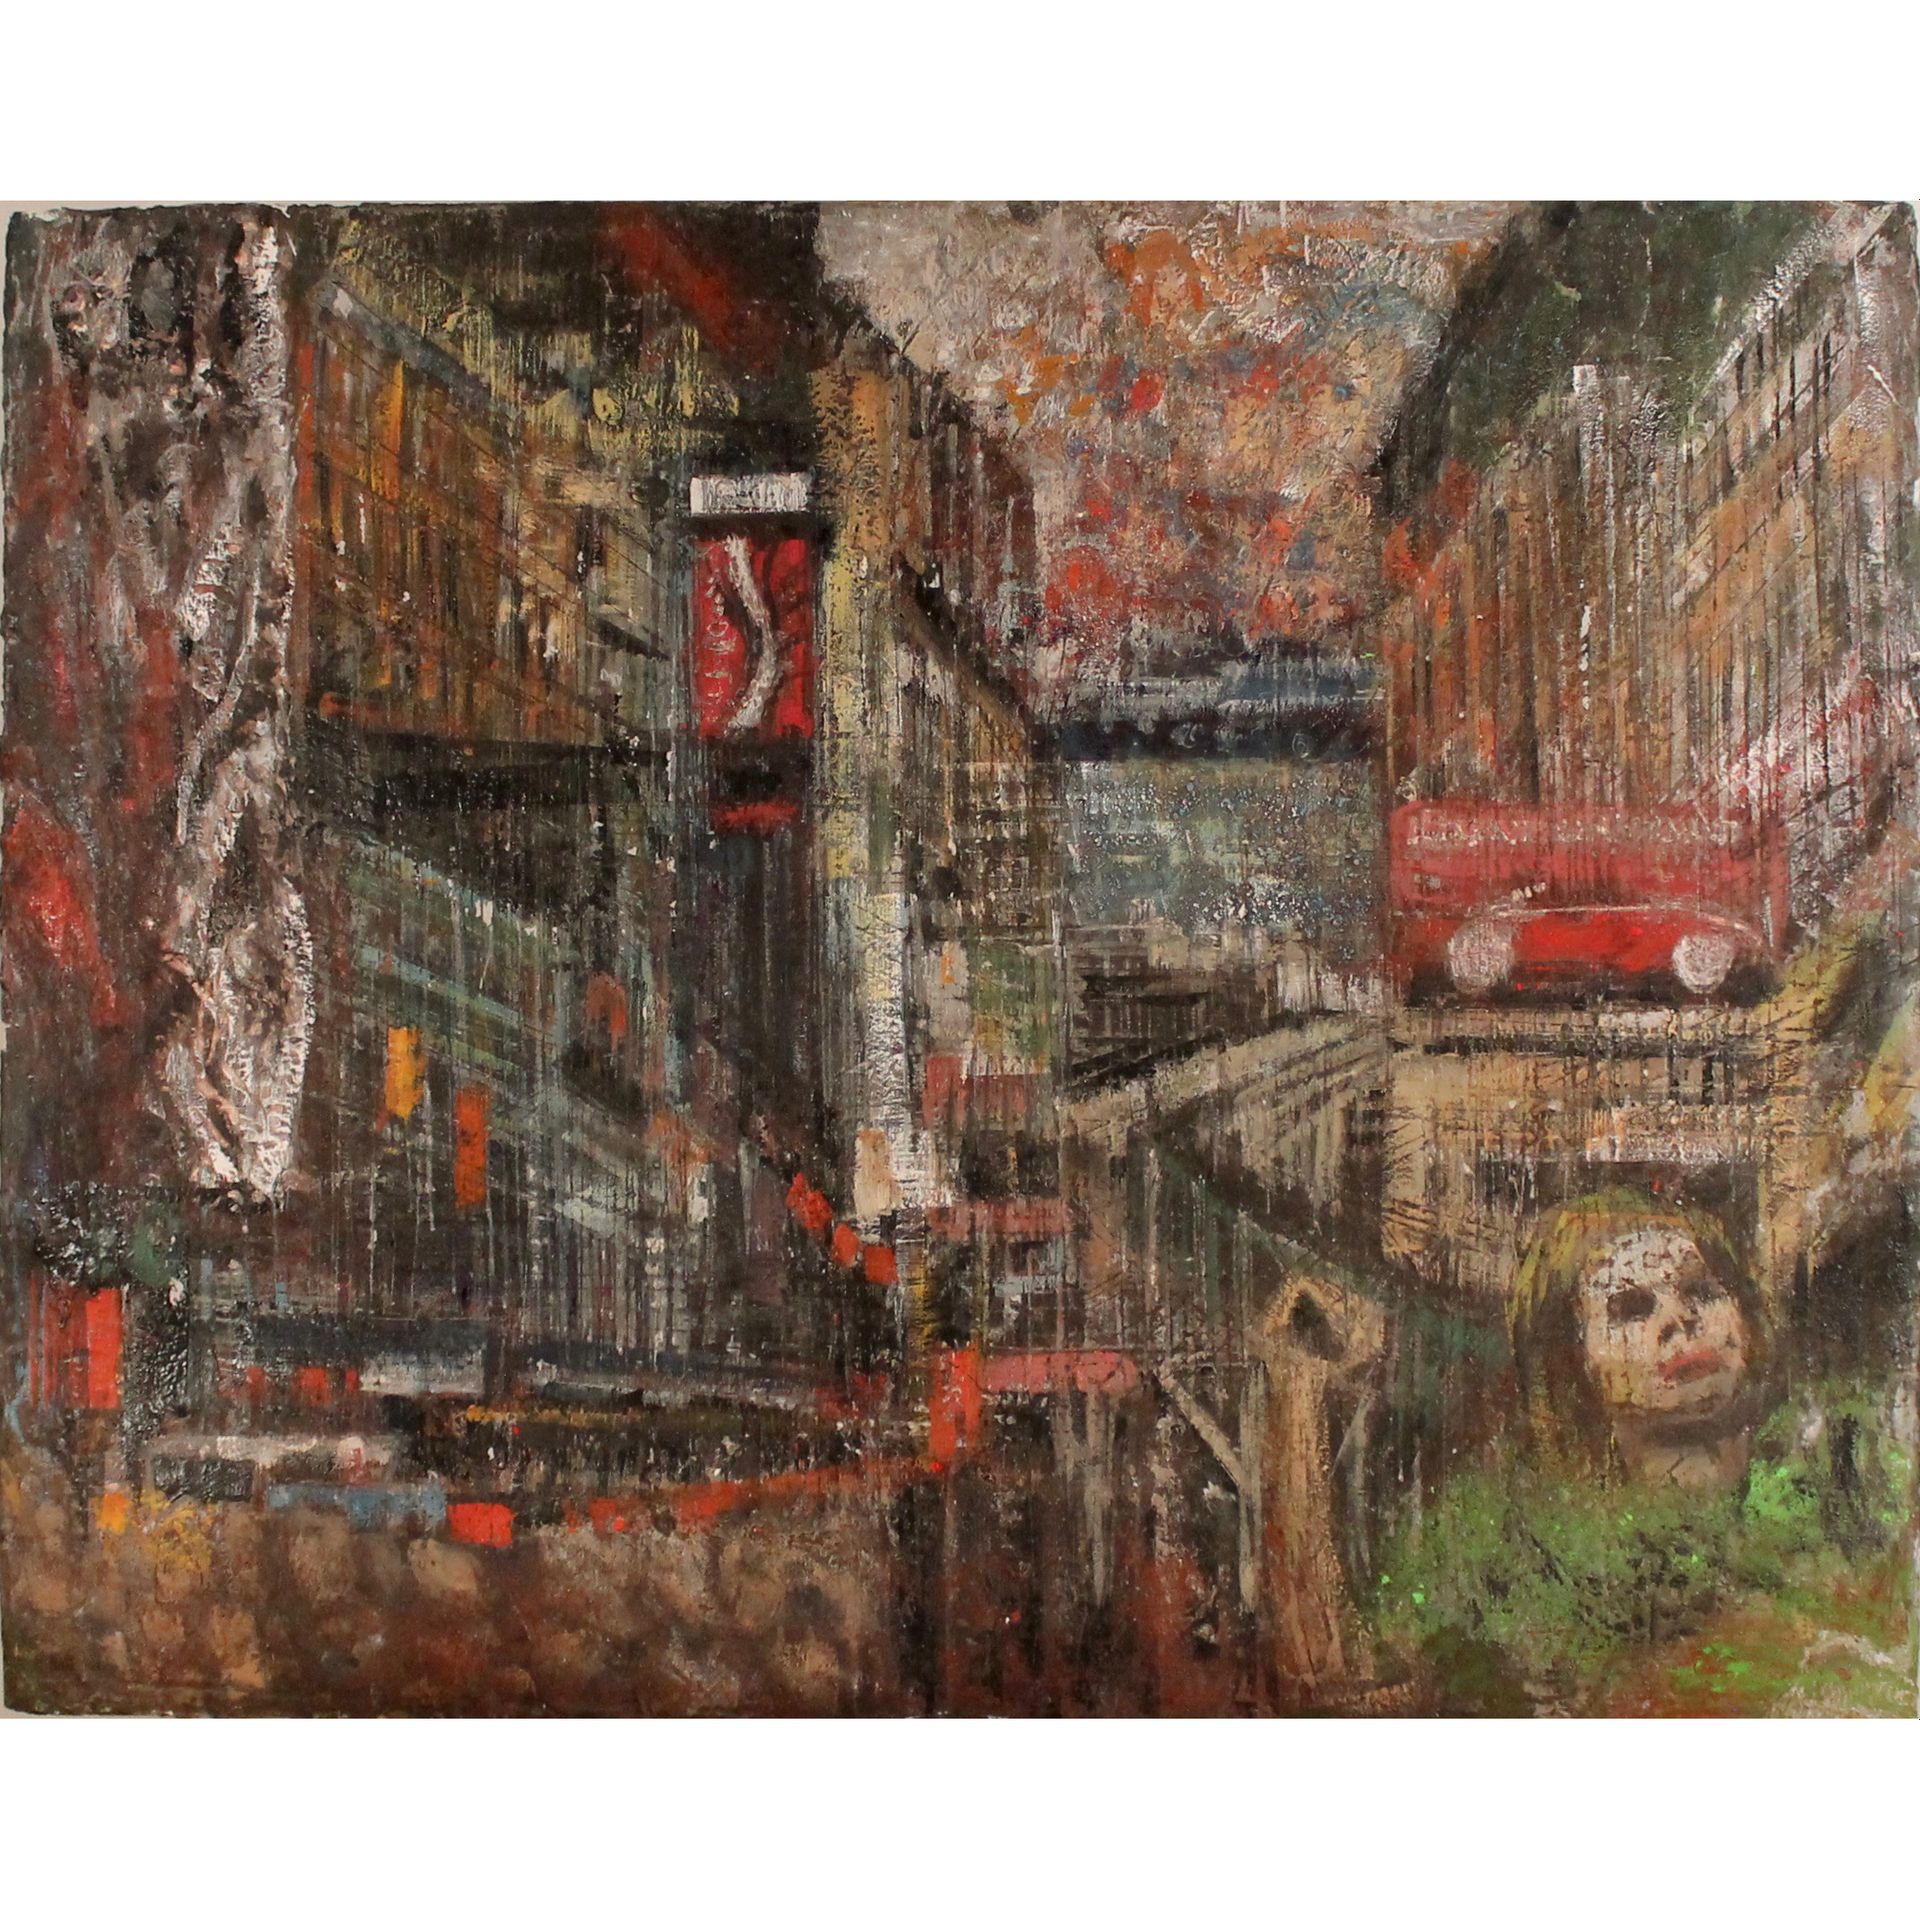 CROCE TARAVELLA (1964) "Contrazione urbana" - "Urban contraction" 画布上的油画和蚀刻画。201&hellip;